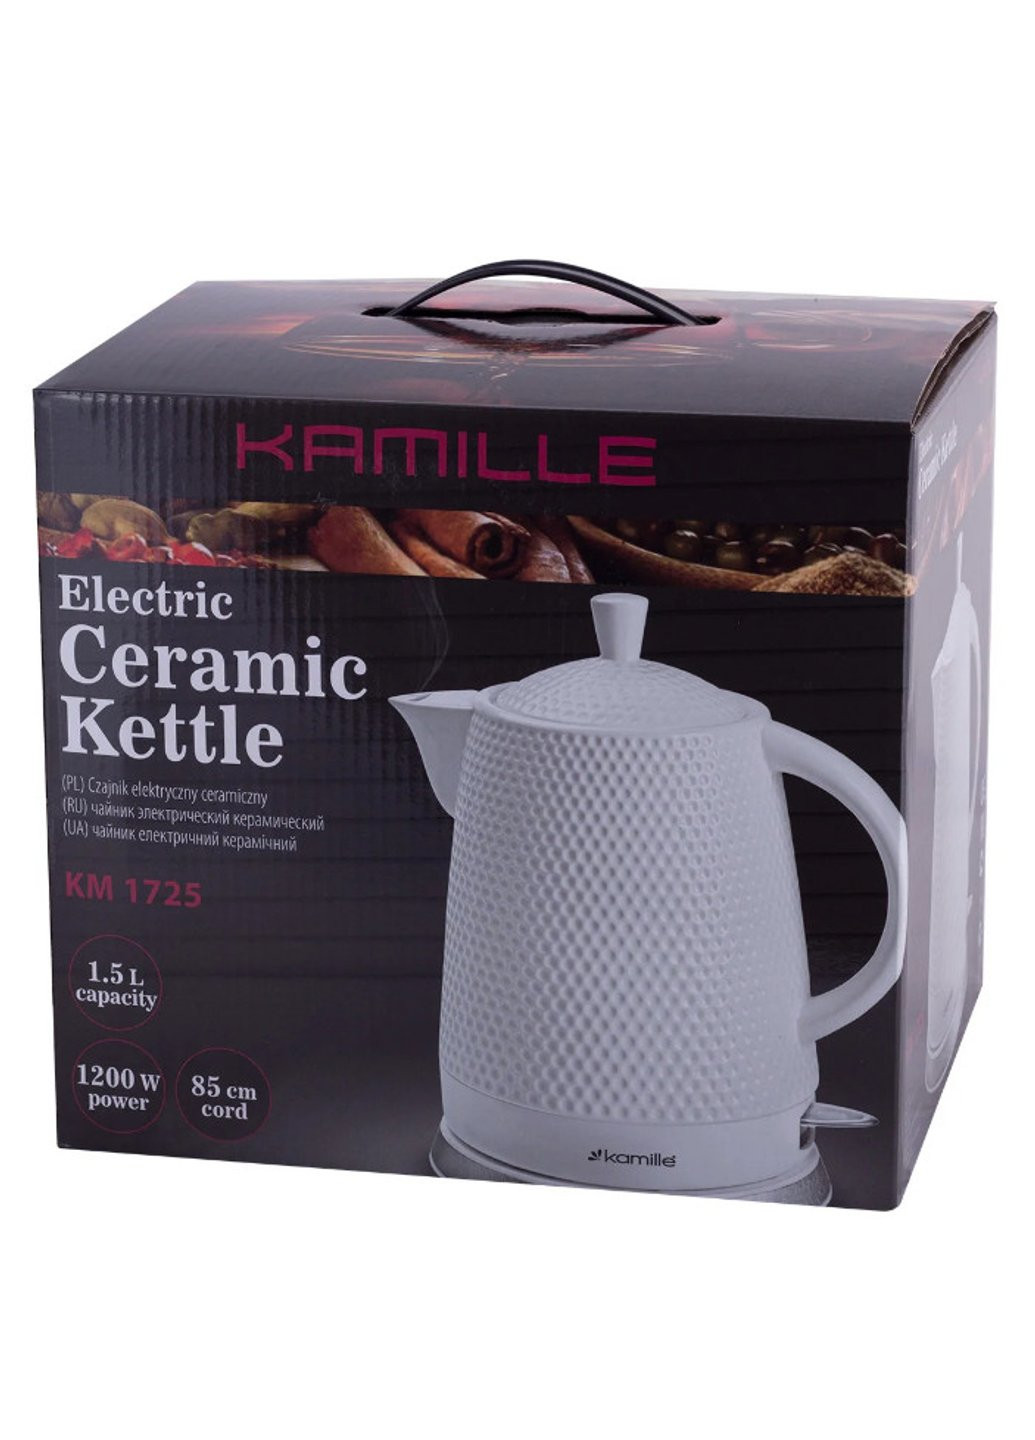 Электрический чайник керамический 1,5 л KM-1725 Kamille (254703366)